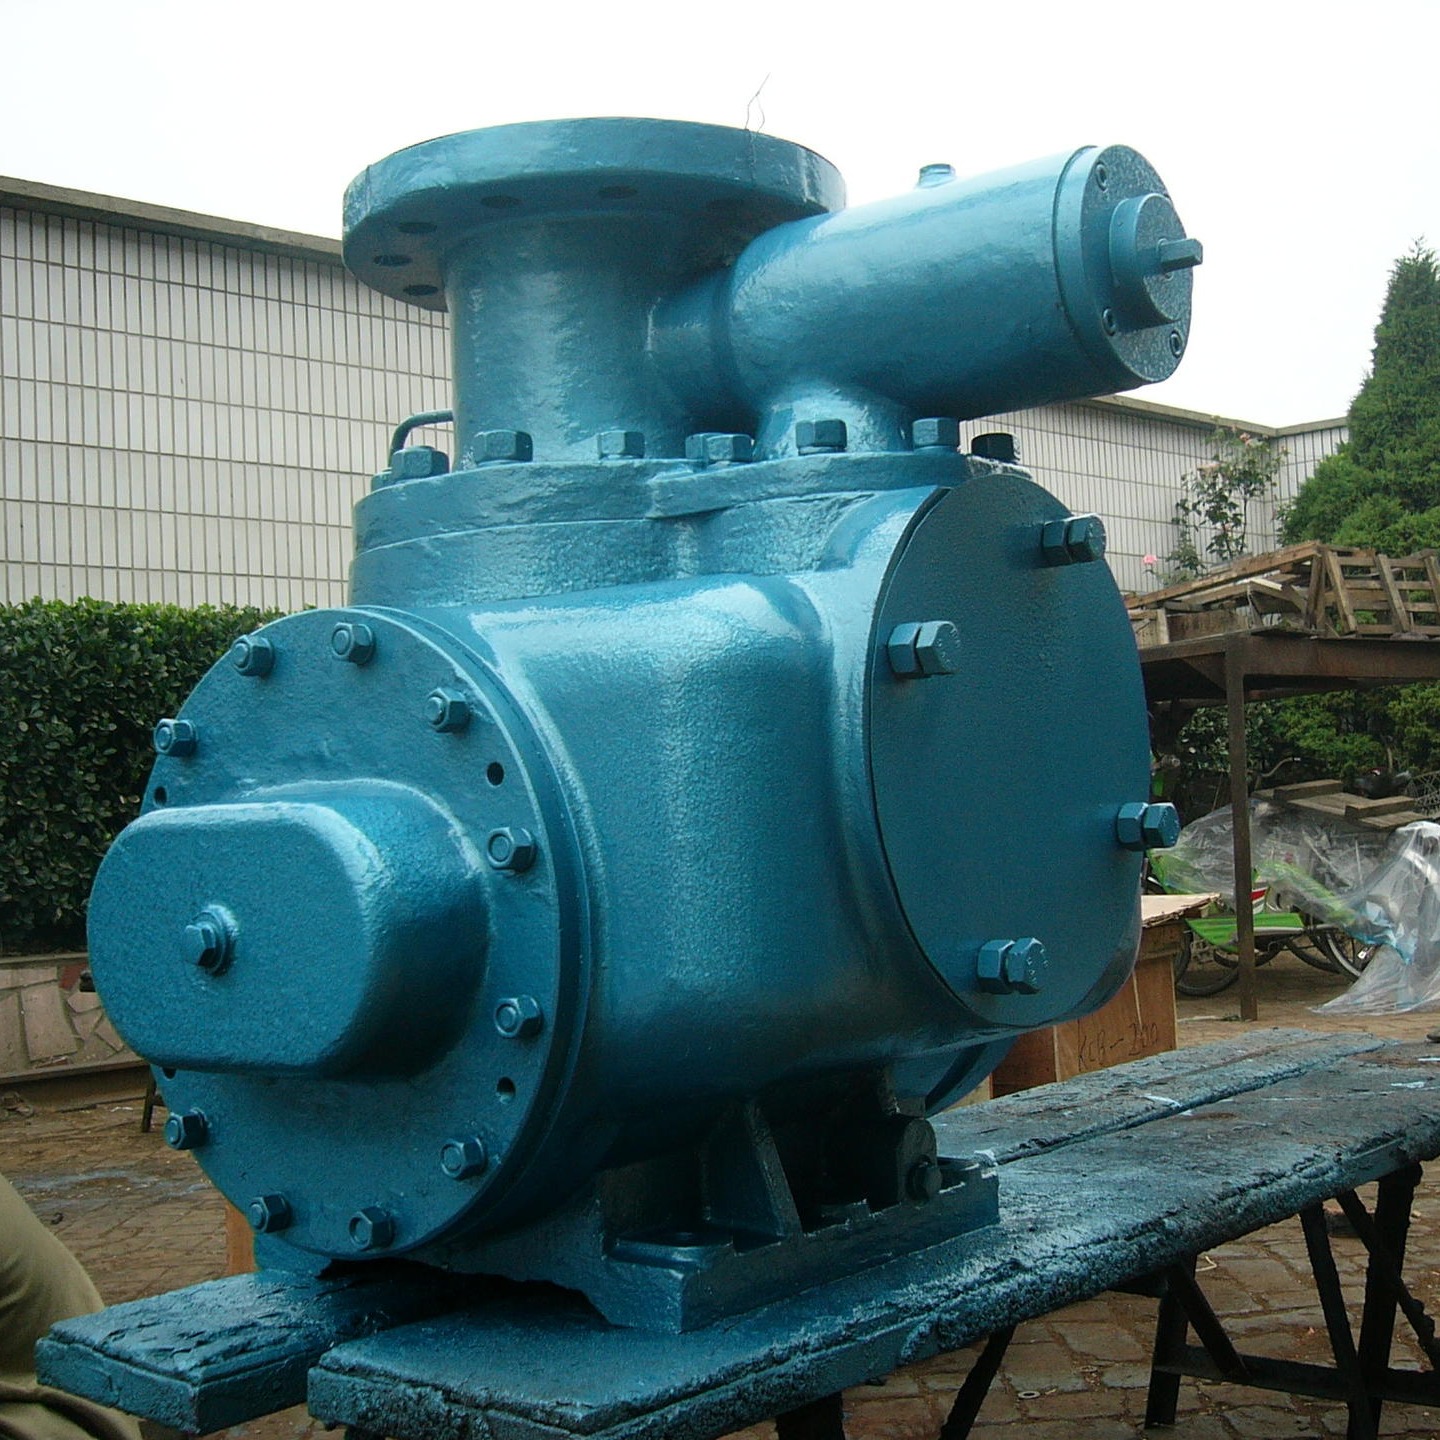 保温沥青泵 双螺杆沥青泵 保温双螺杆泵 使用效果好 津远东沥青泵厂家直销图片